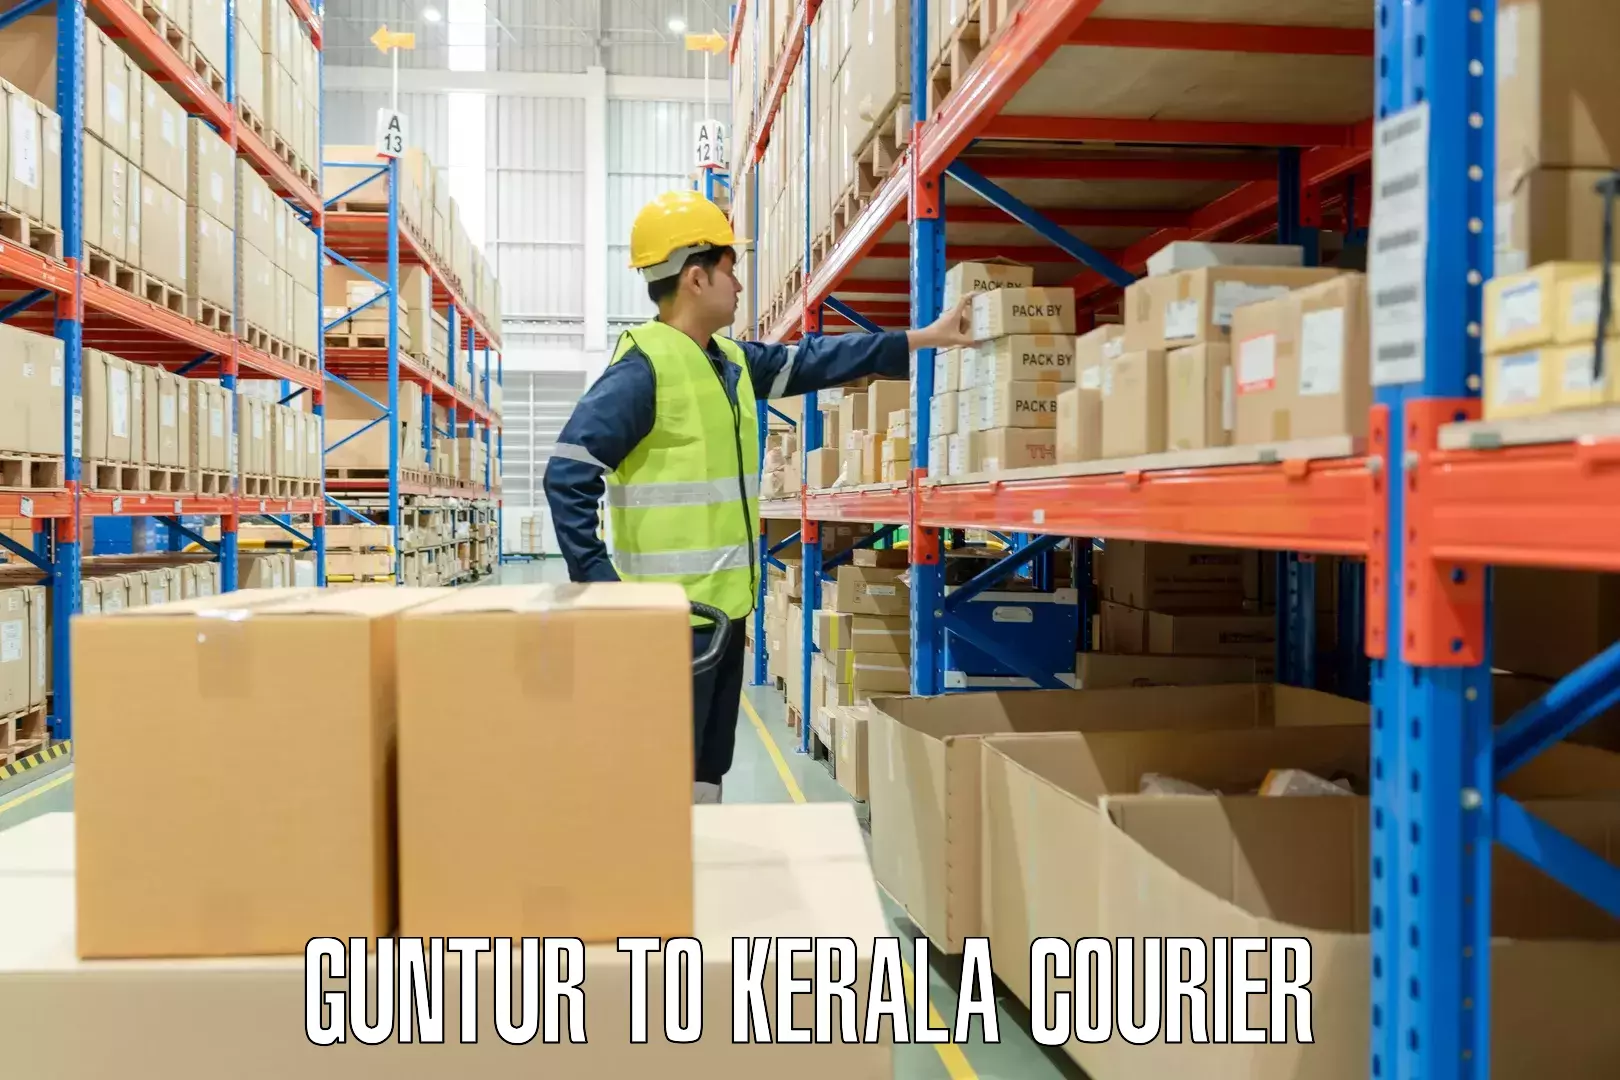 Baggage shipping service Guntur to Kerala